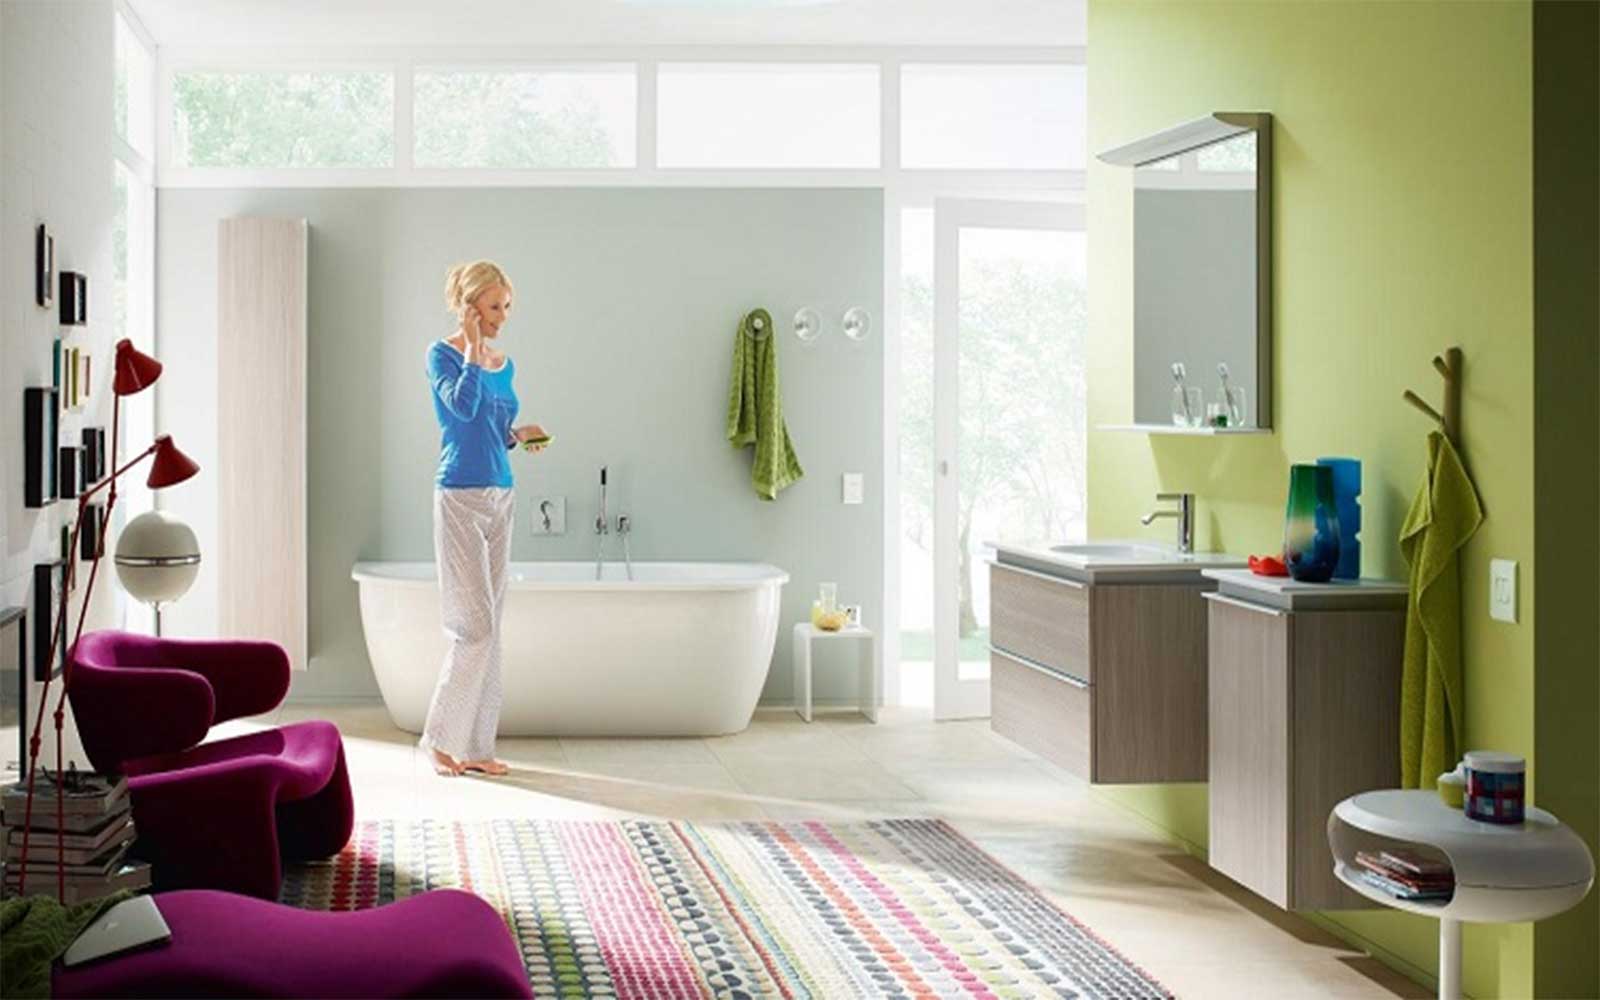 Chia sẻ kinh nghiệm mua thiết bị vệ sinh cho nhà tắm